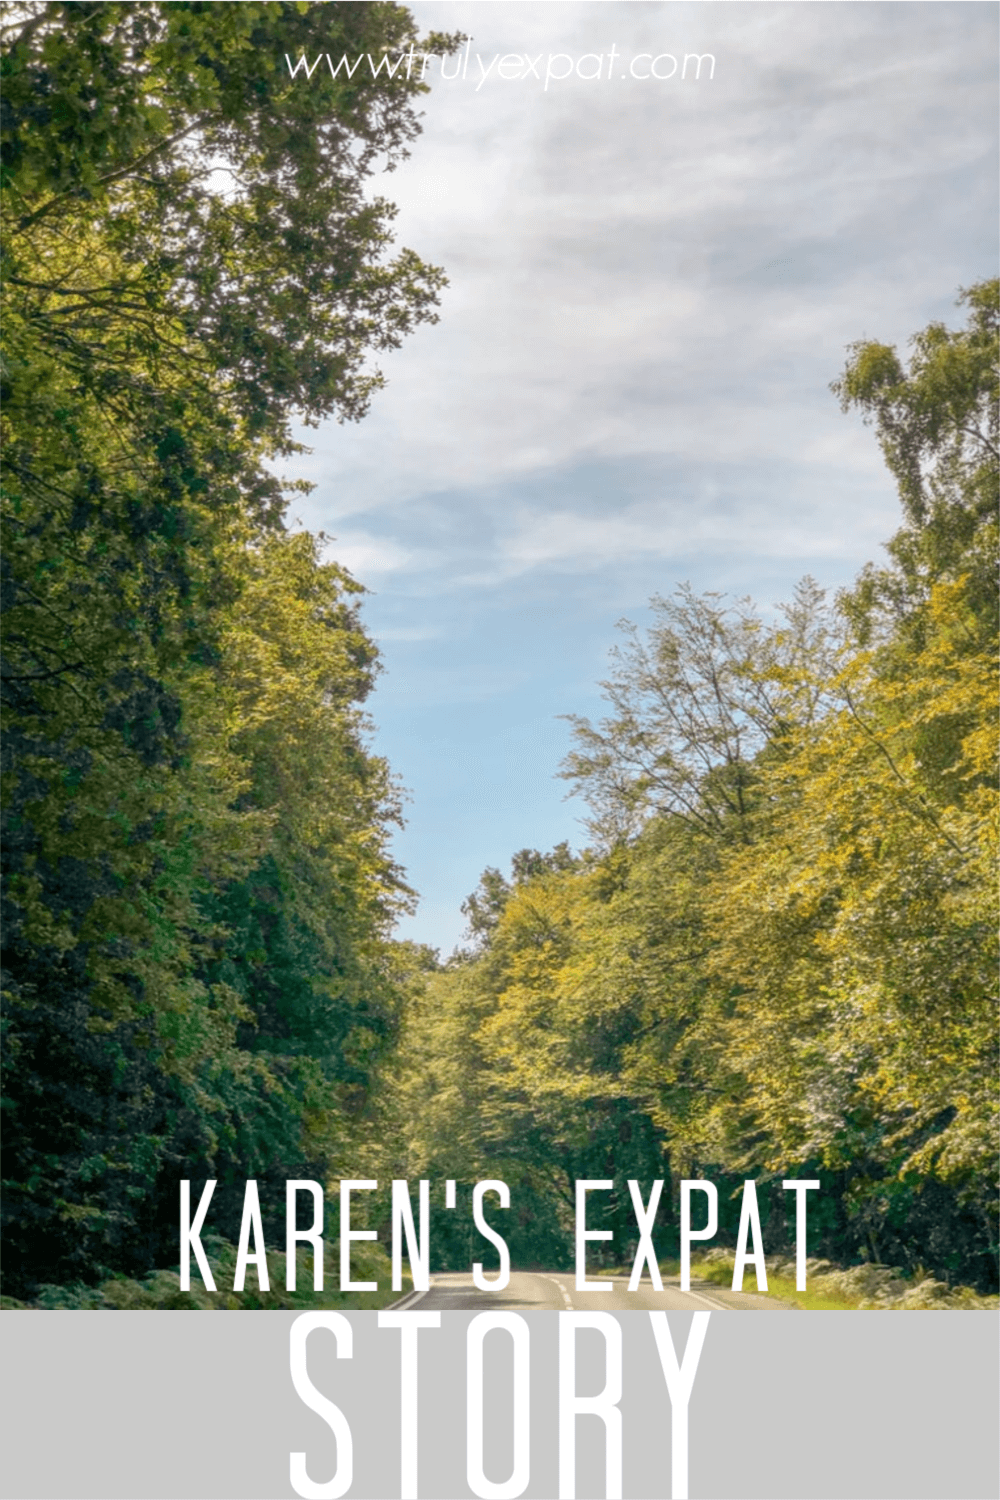 karens expat story